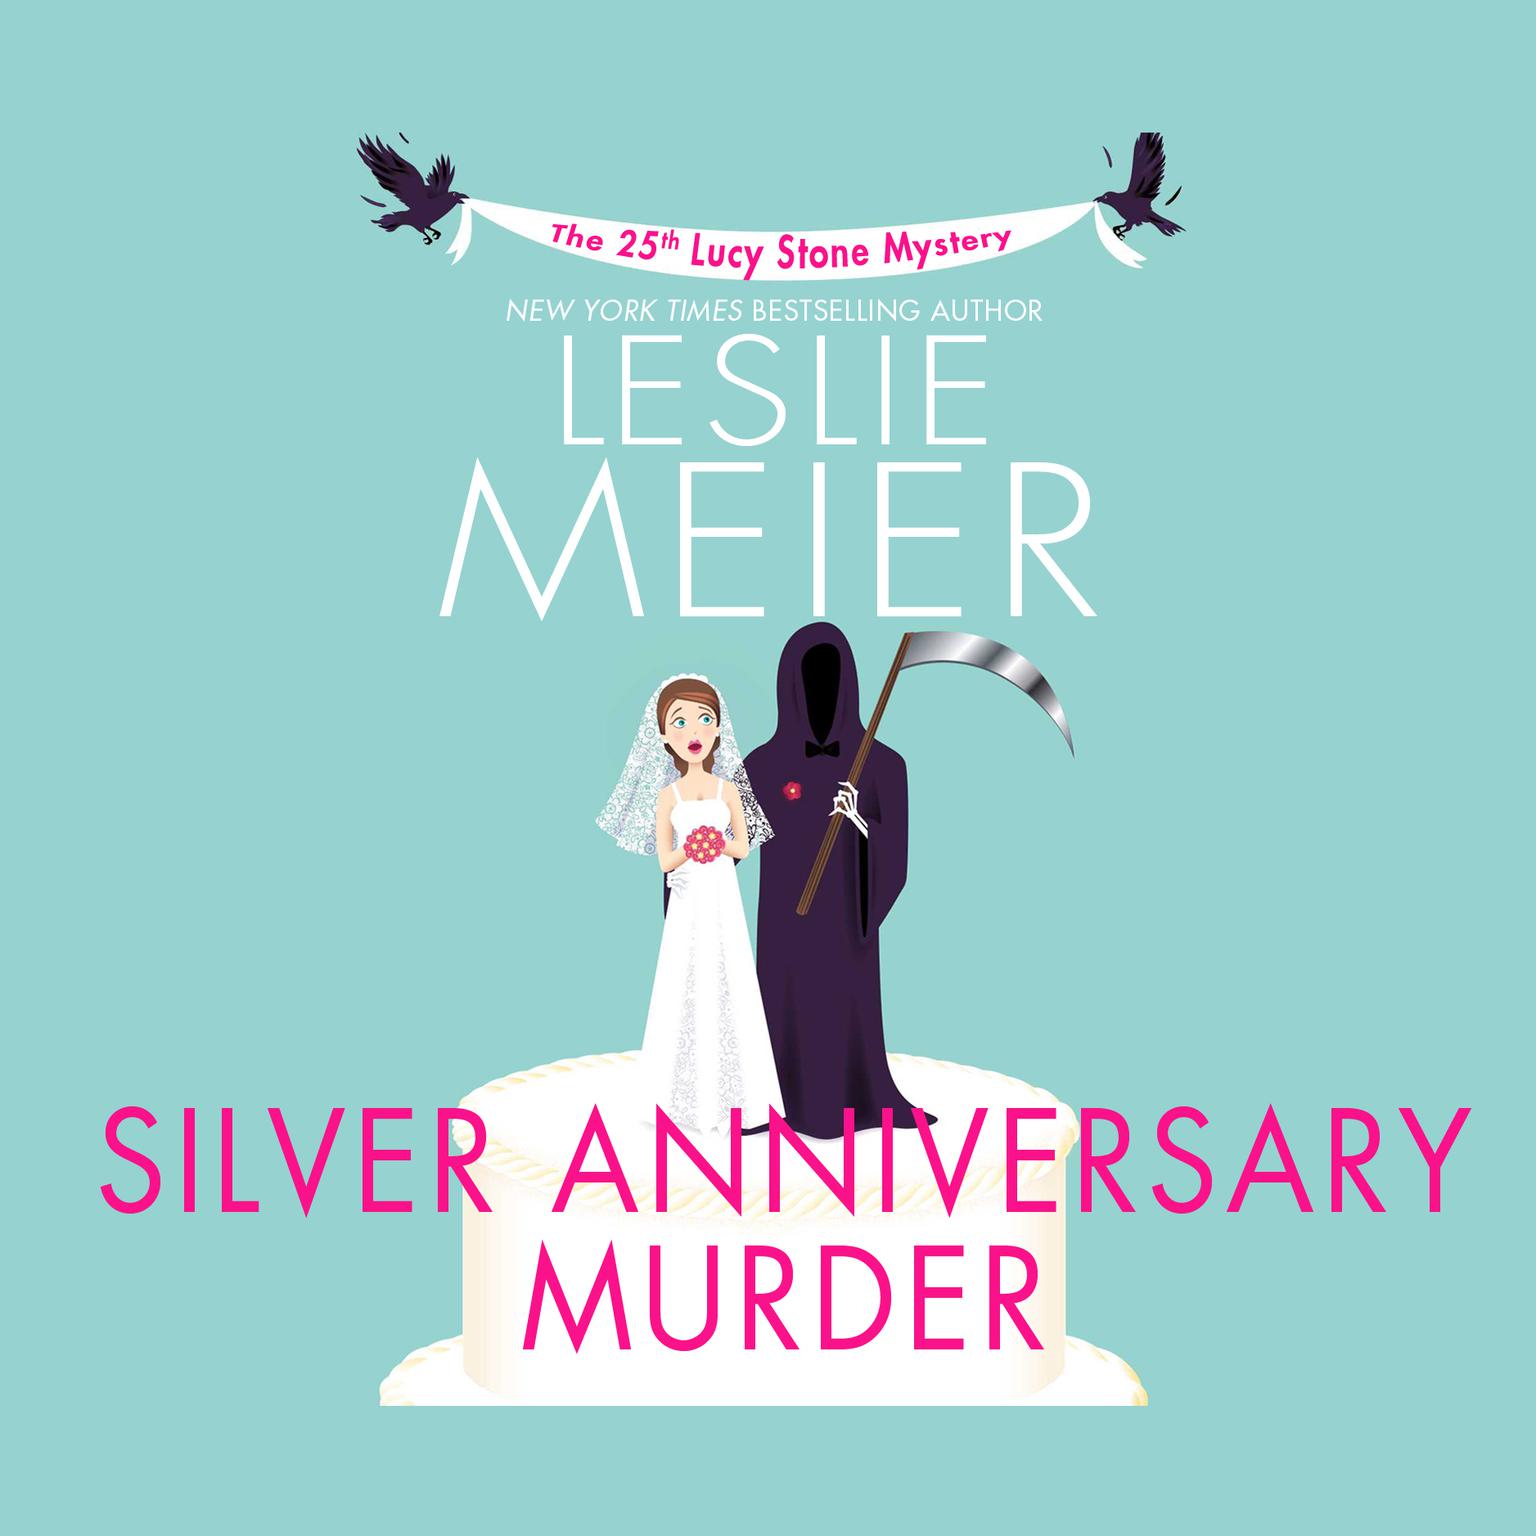 Silver Anniversary Murder Audiobook, by Leslie Meier